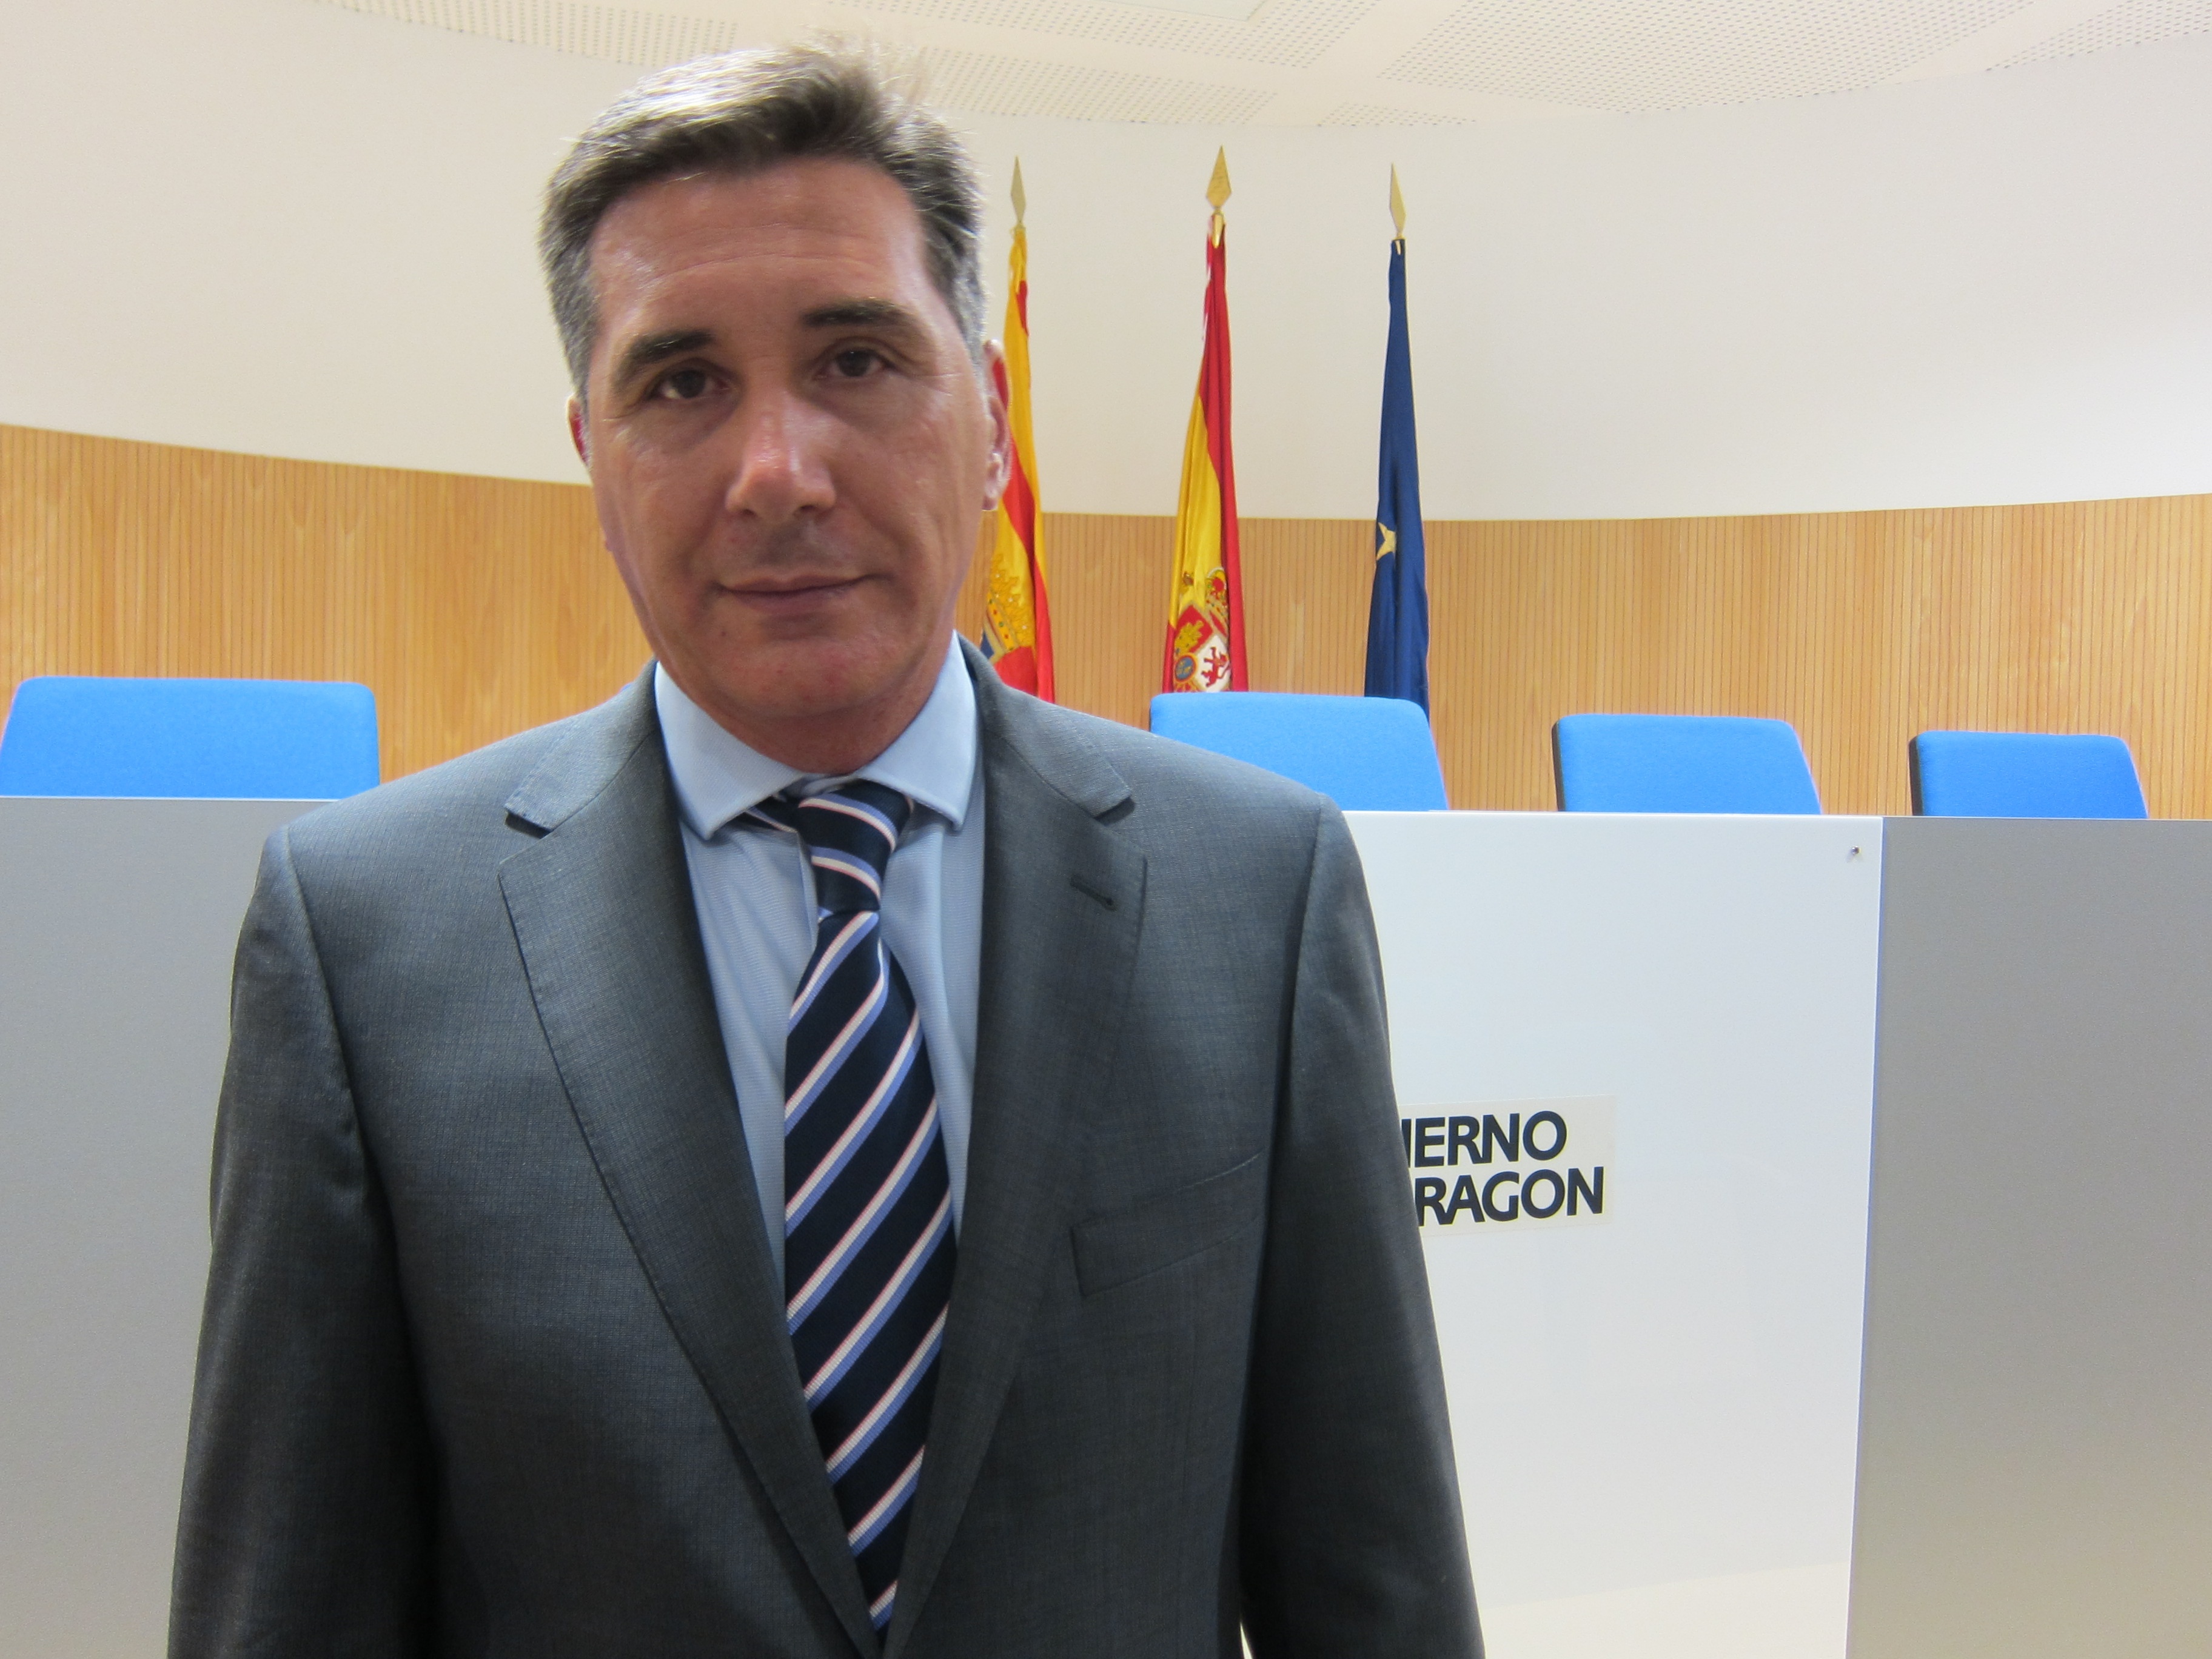 El consejero aragonés de Sanidad envía una carta a su homólogo catalán tras detectar 6 pacientes aragoneses no asistidos